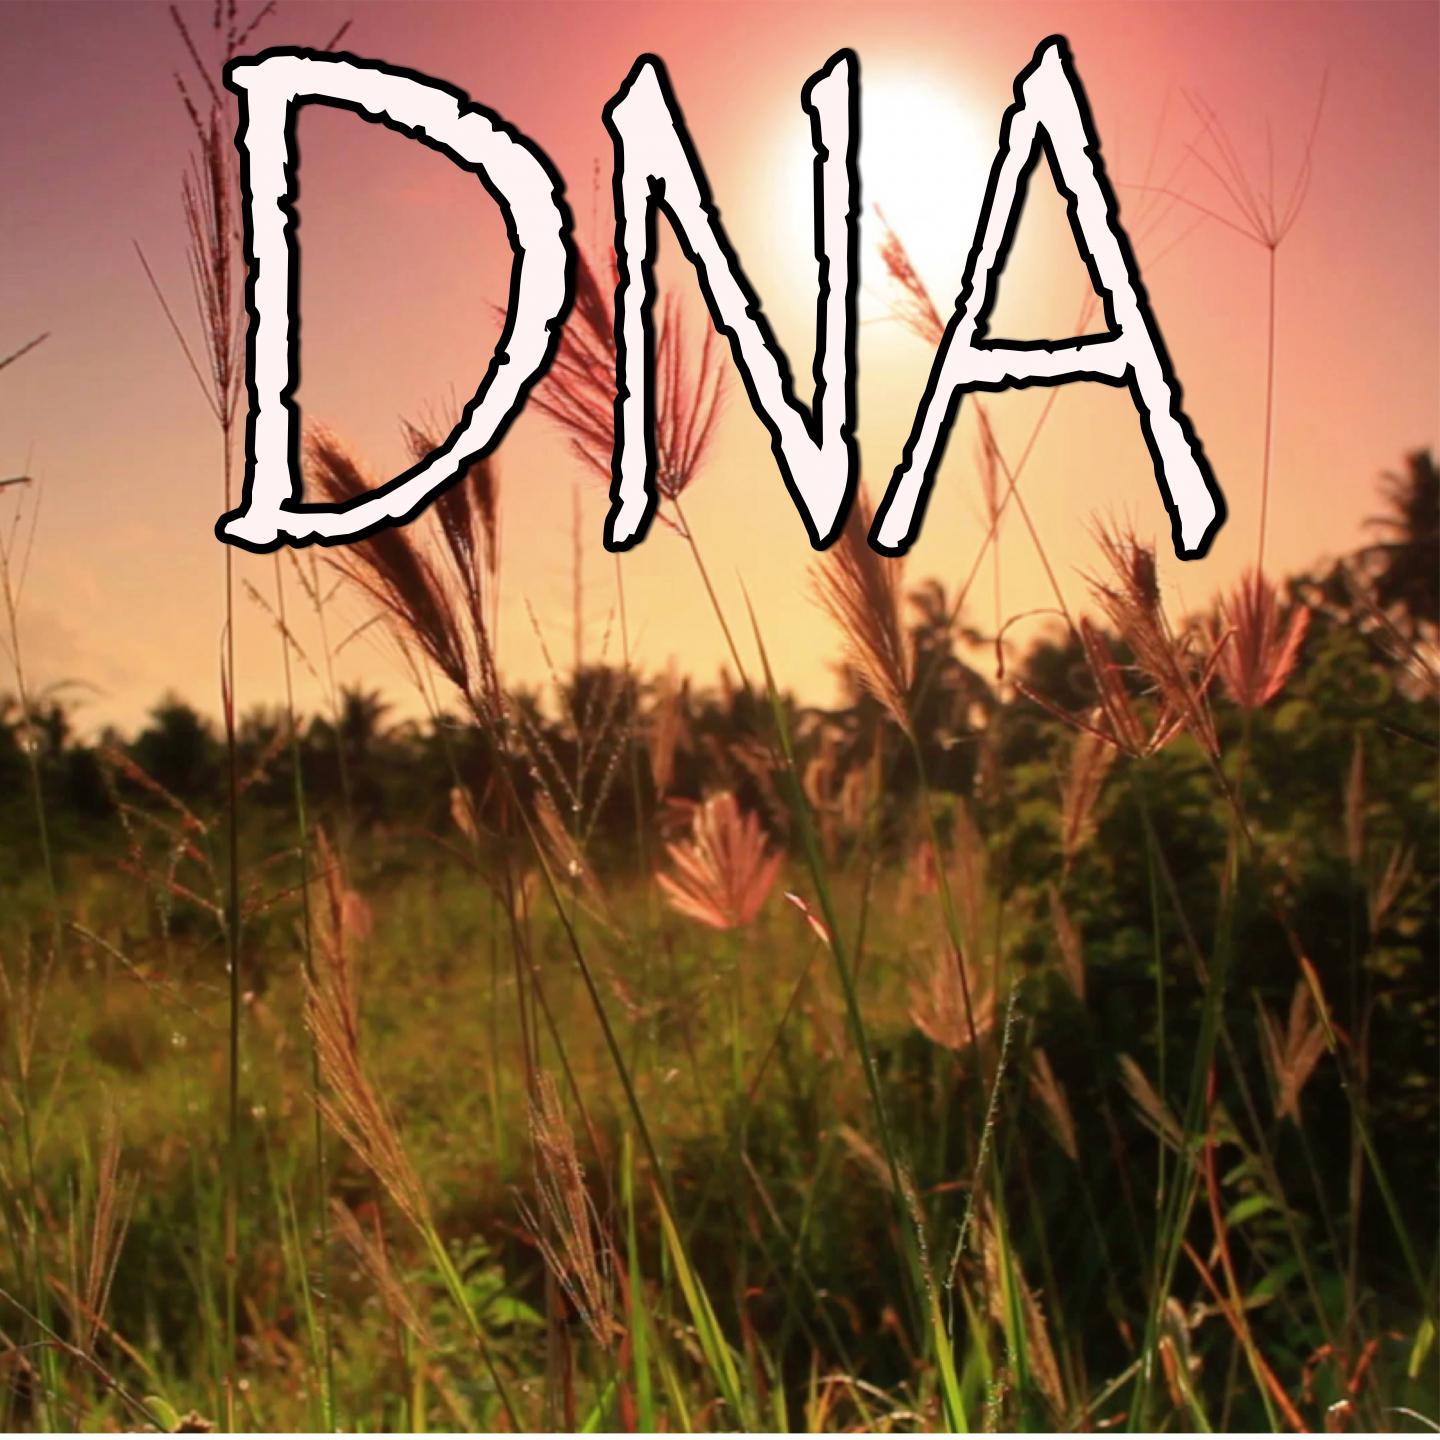 DNA - Tribute to Kendrick Lamar